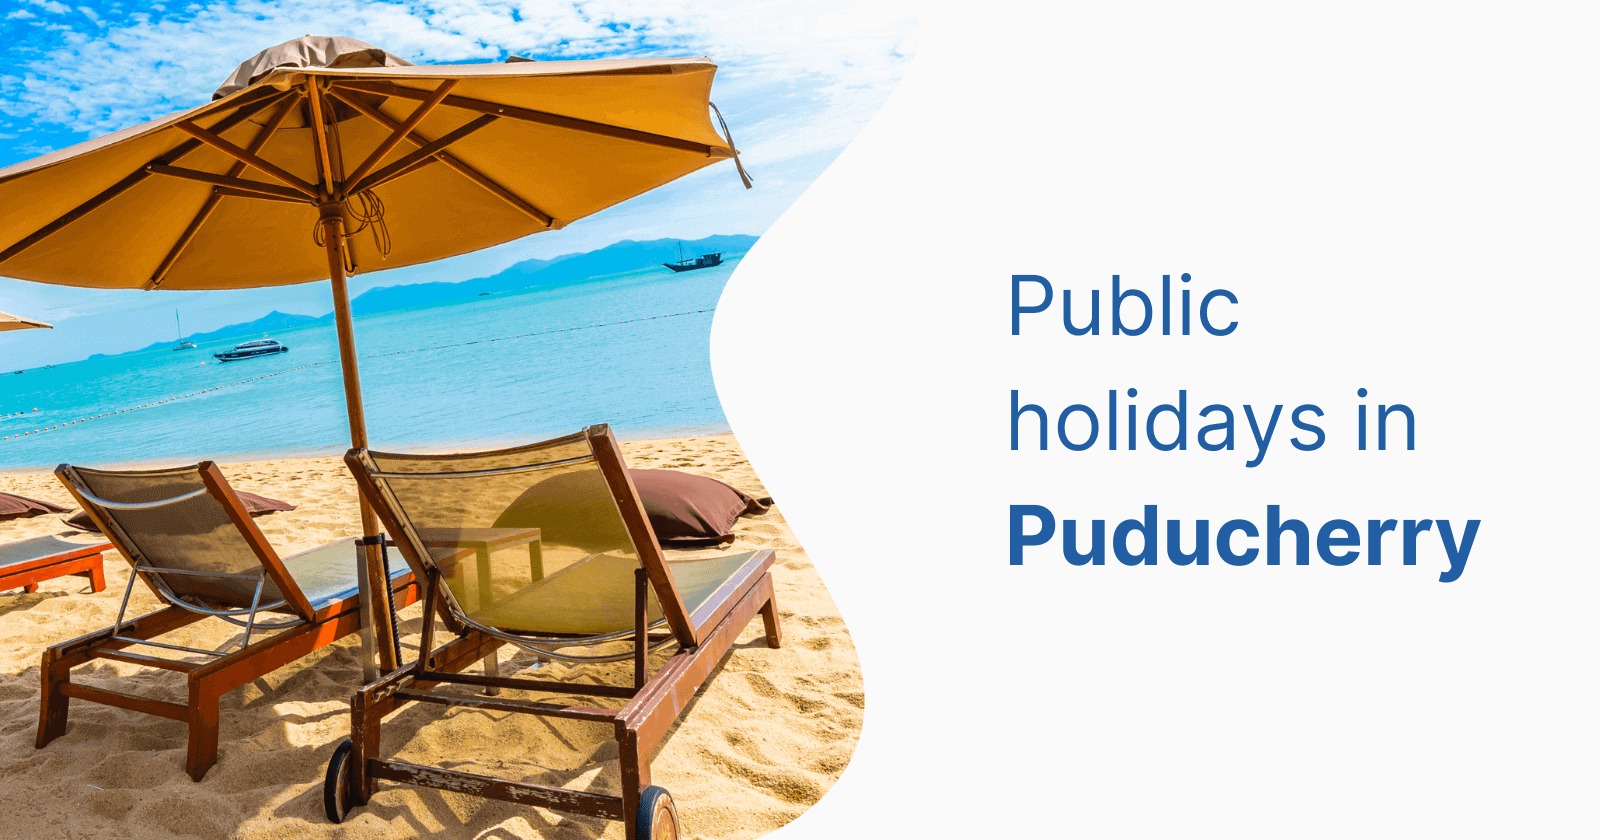 Puducherry Holidays: List of Public Holidays in Puducherry in 2023